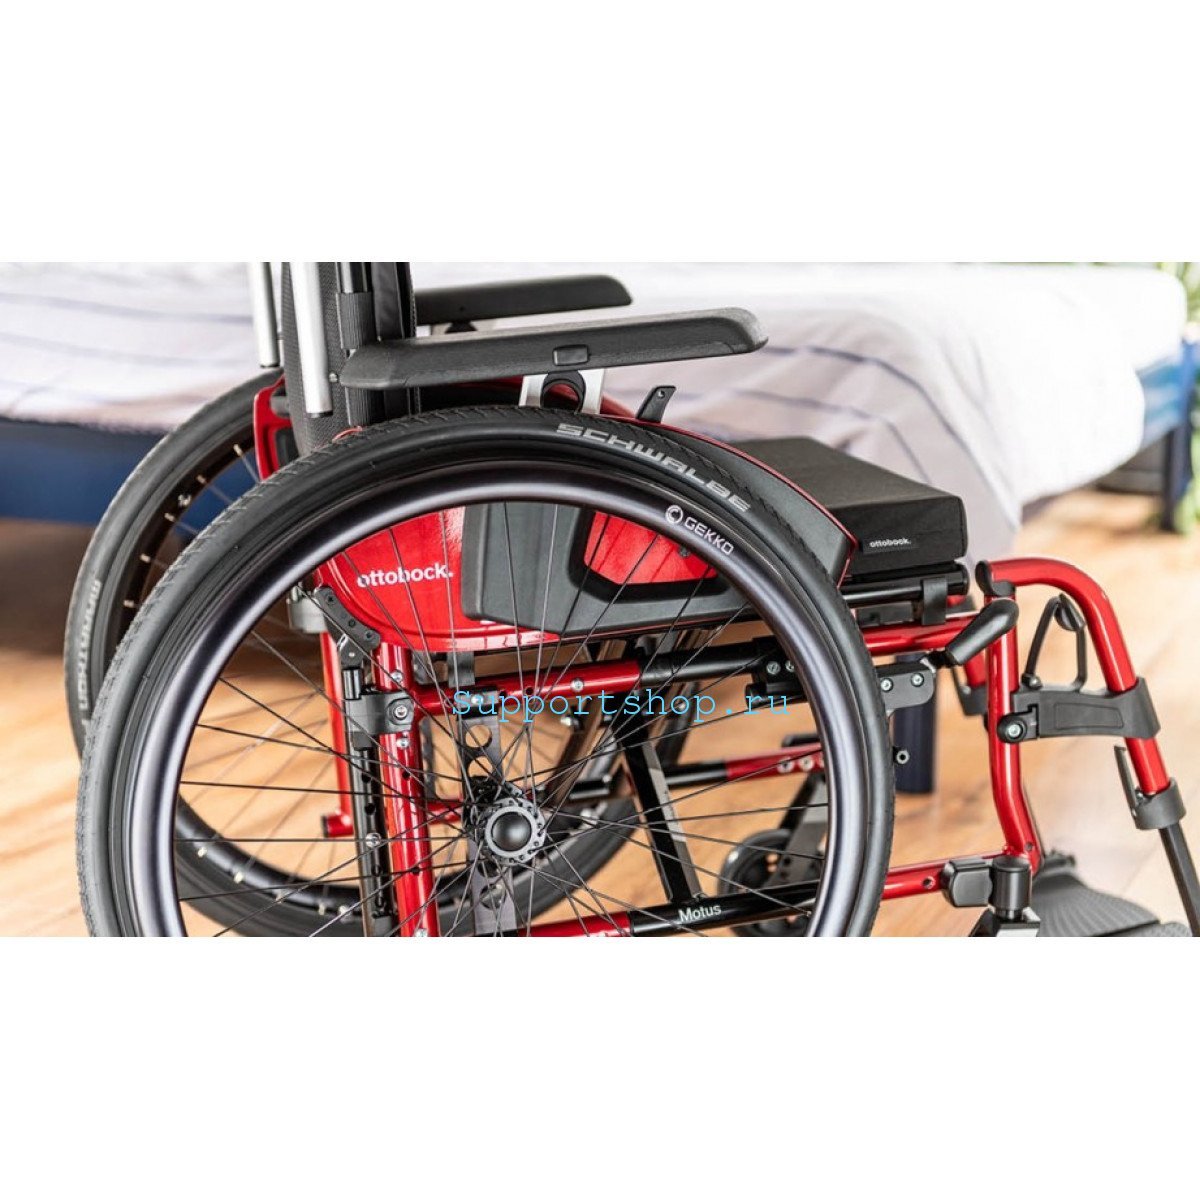 Активная инвалидная кресло-коляска Otto Bock Мотус CS 2.0